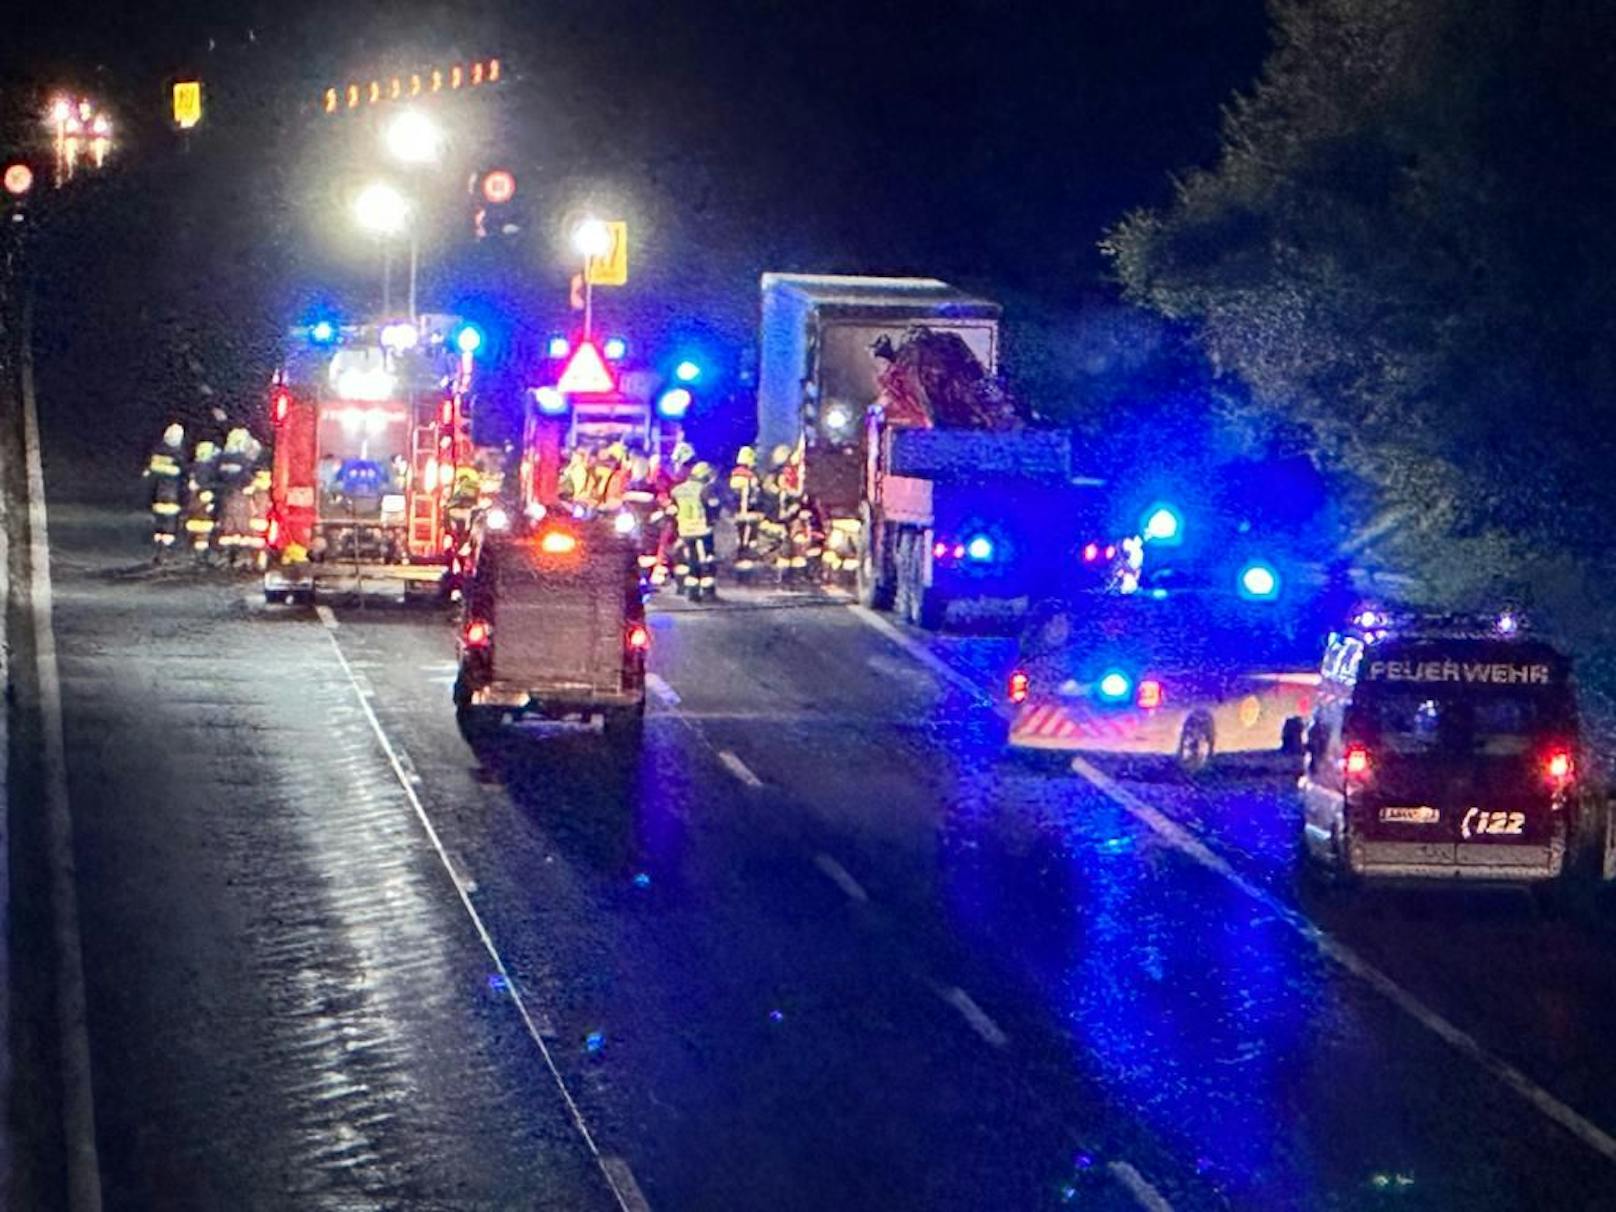 Schrecklicher Unfal auf der A1 am Samstag: Ein Auto-Lenker krachte gegen einen Lkw, der Pkw ging sofort in Flammen auf - ein Toter!